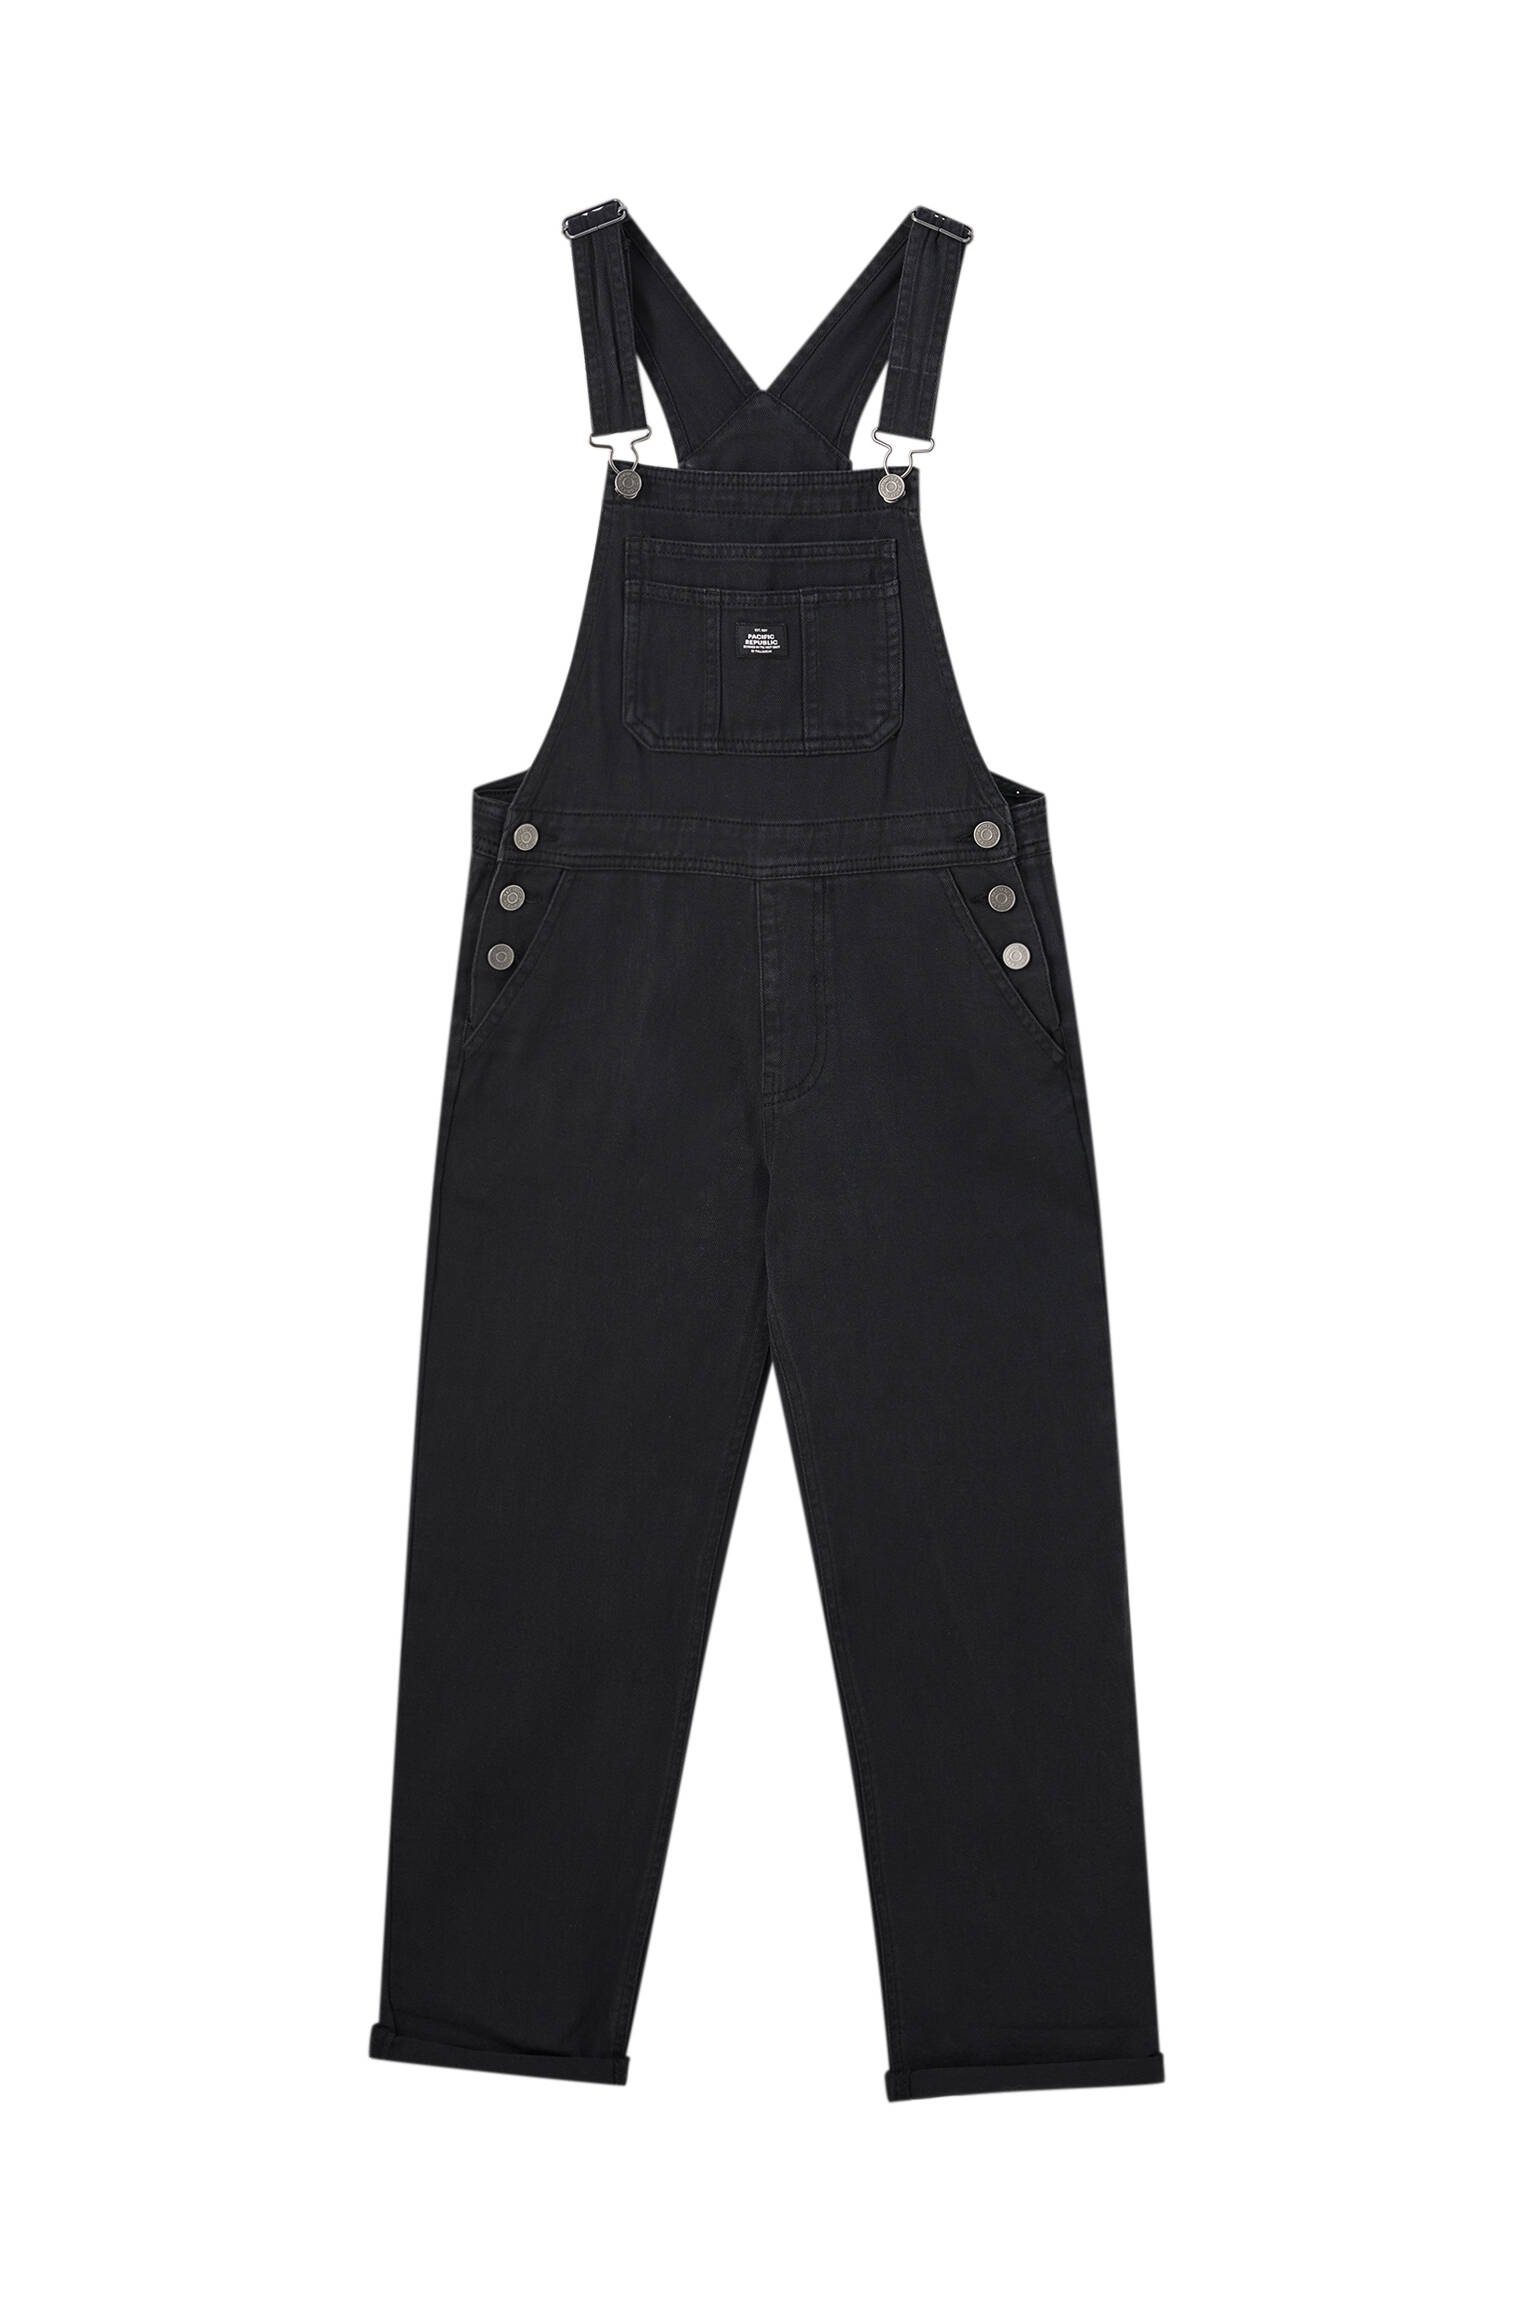 ЧЕРНЫЙ Удлиненный джинсовый комбинезон черного цвета Pull & Bear